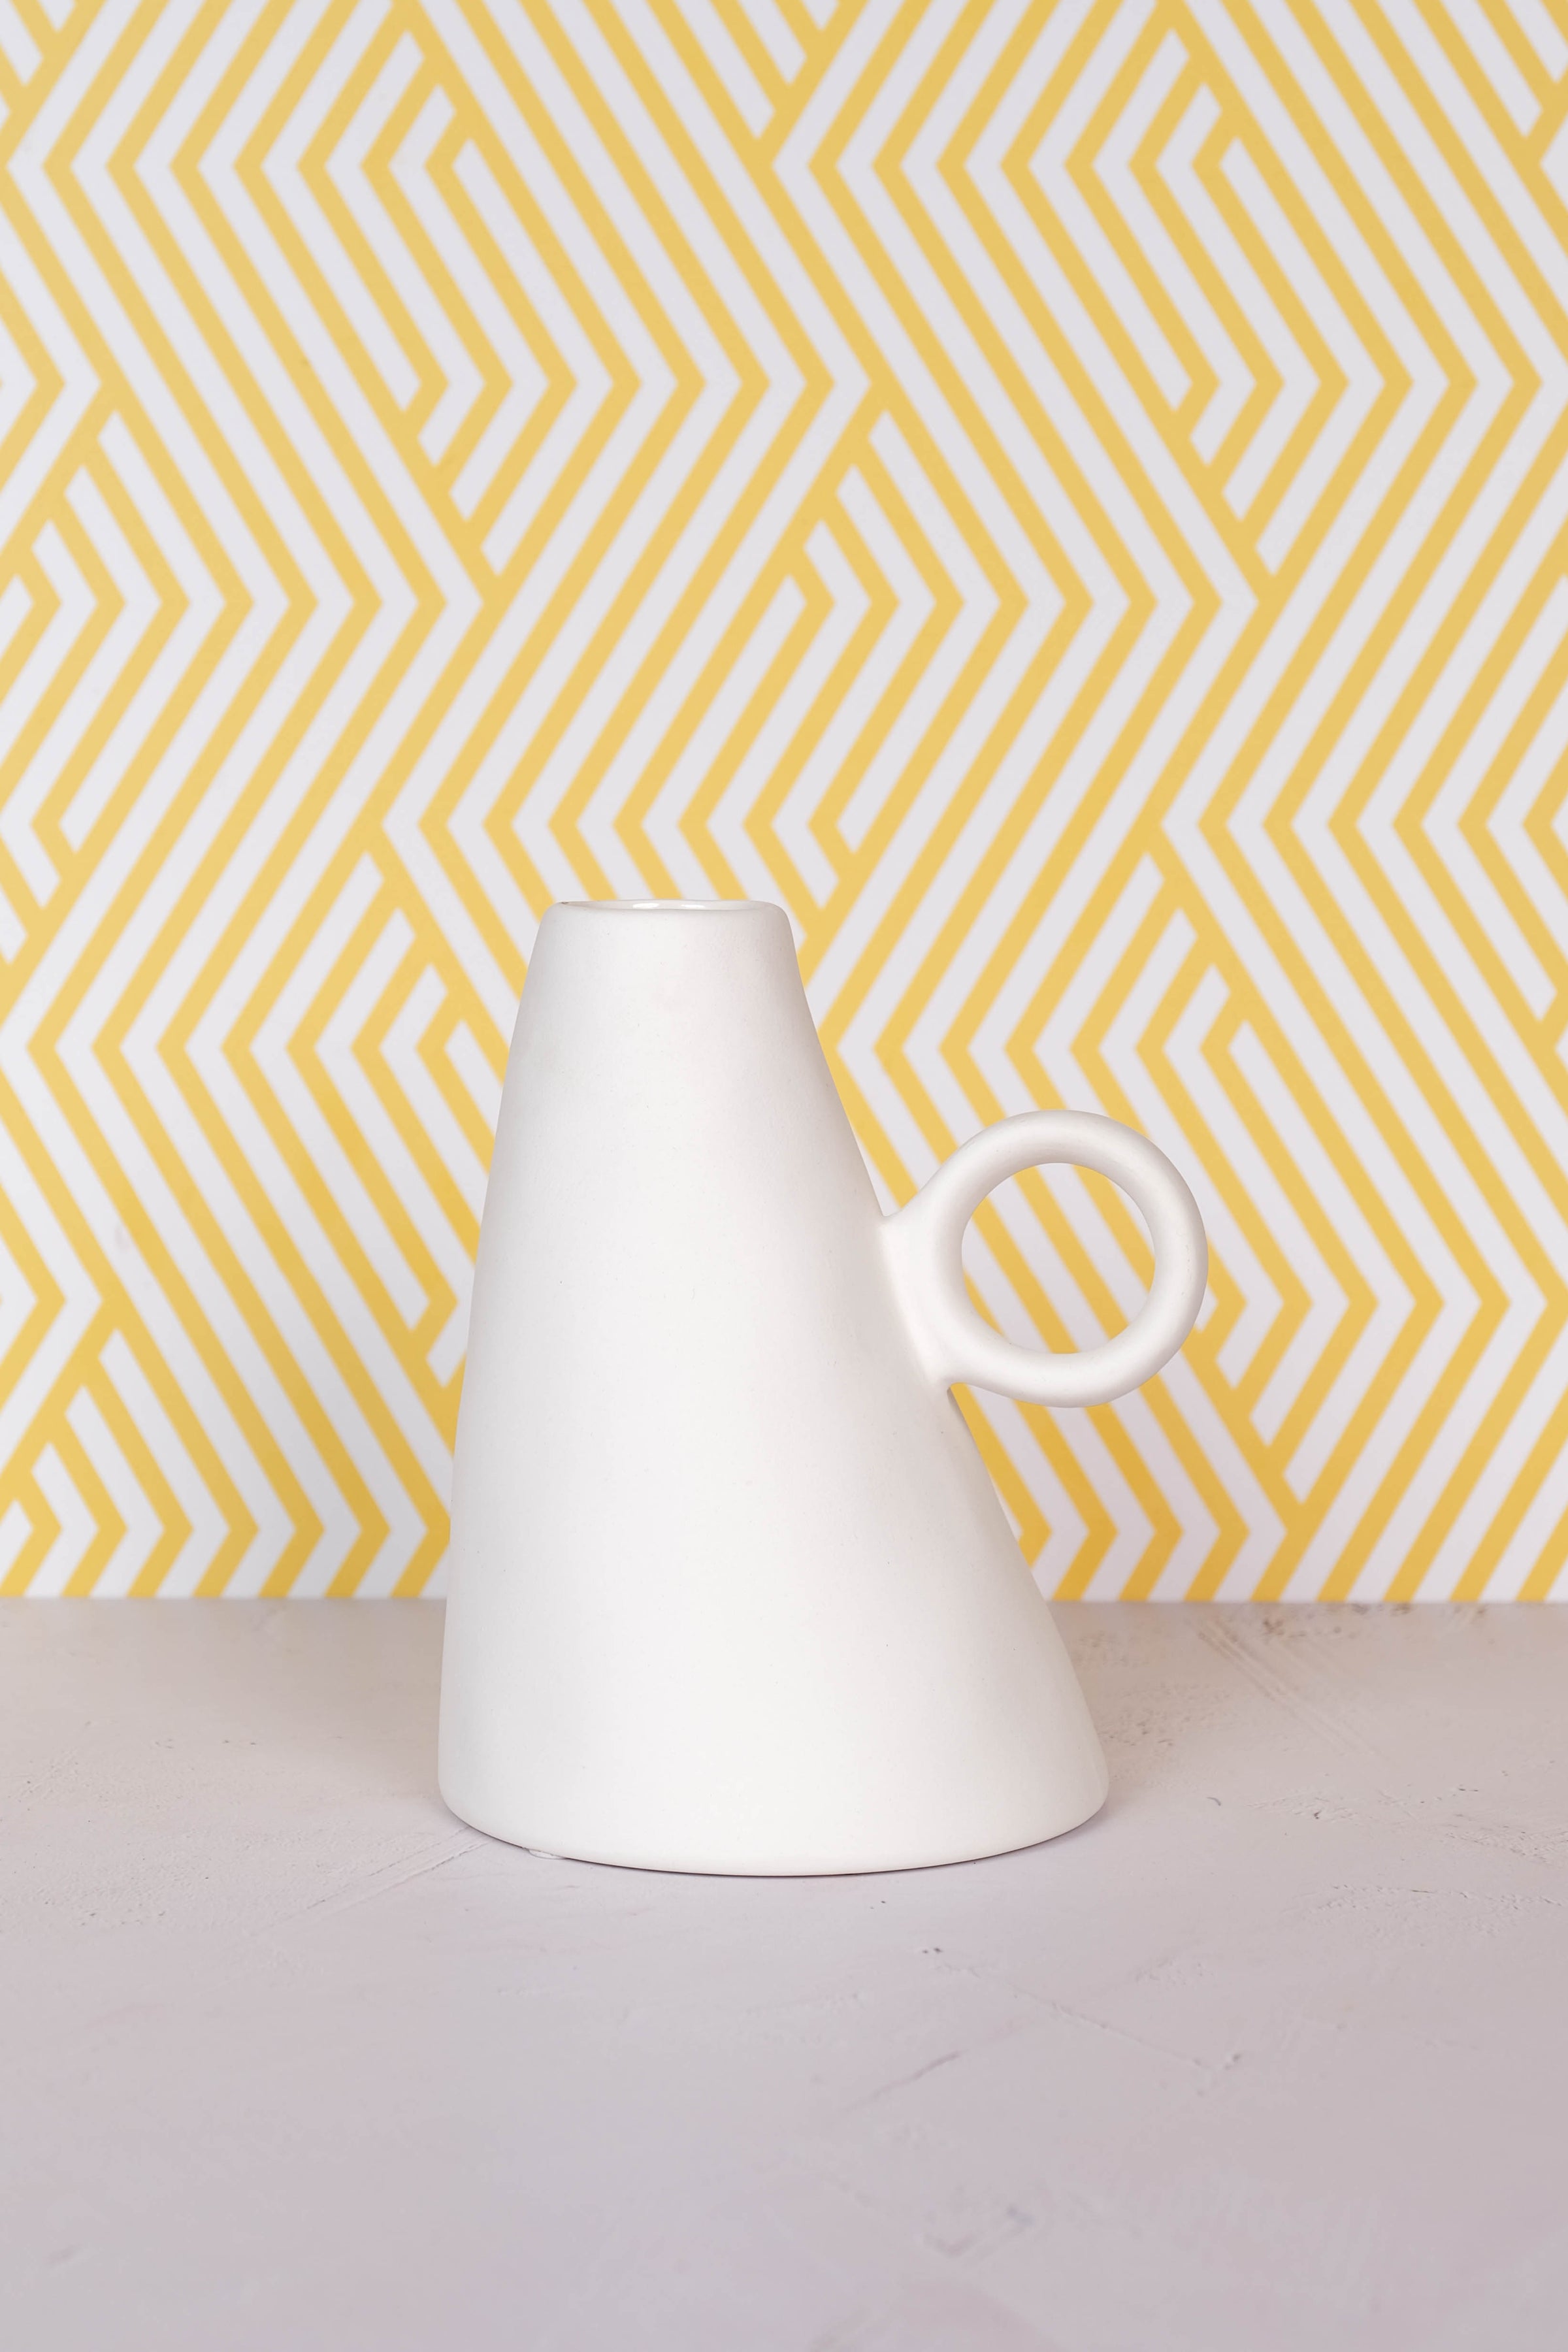 Leaning Lille Ceramic Vase (17cm)